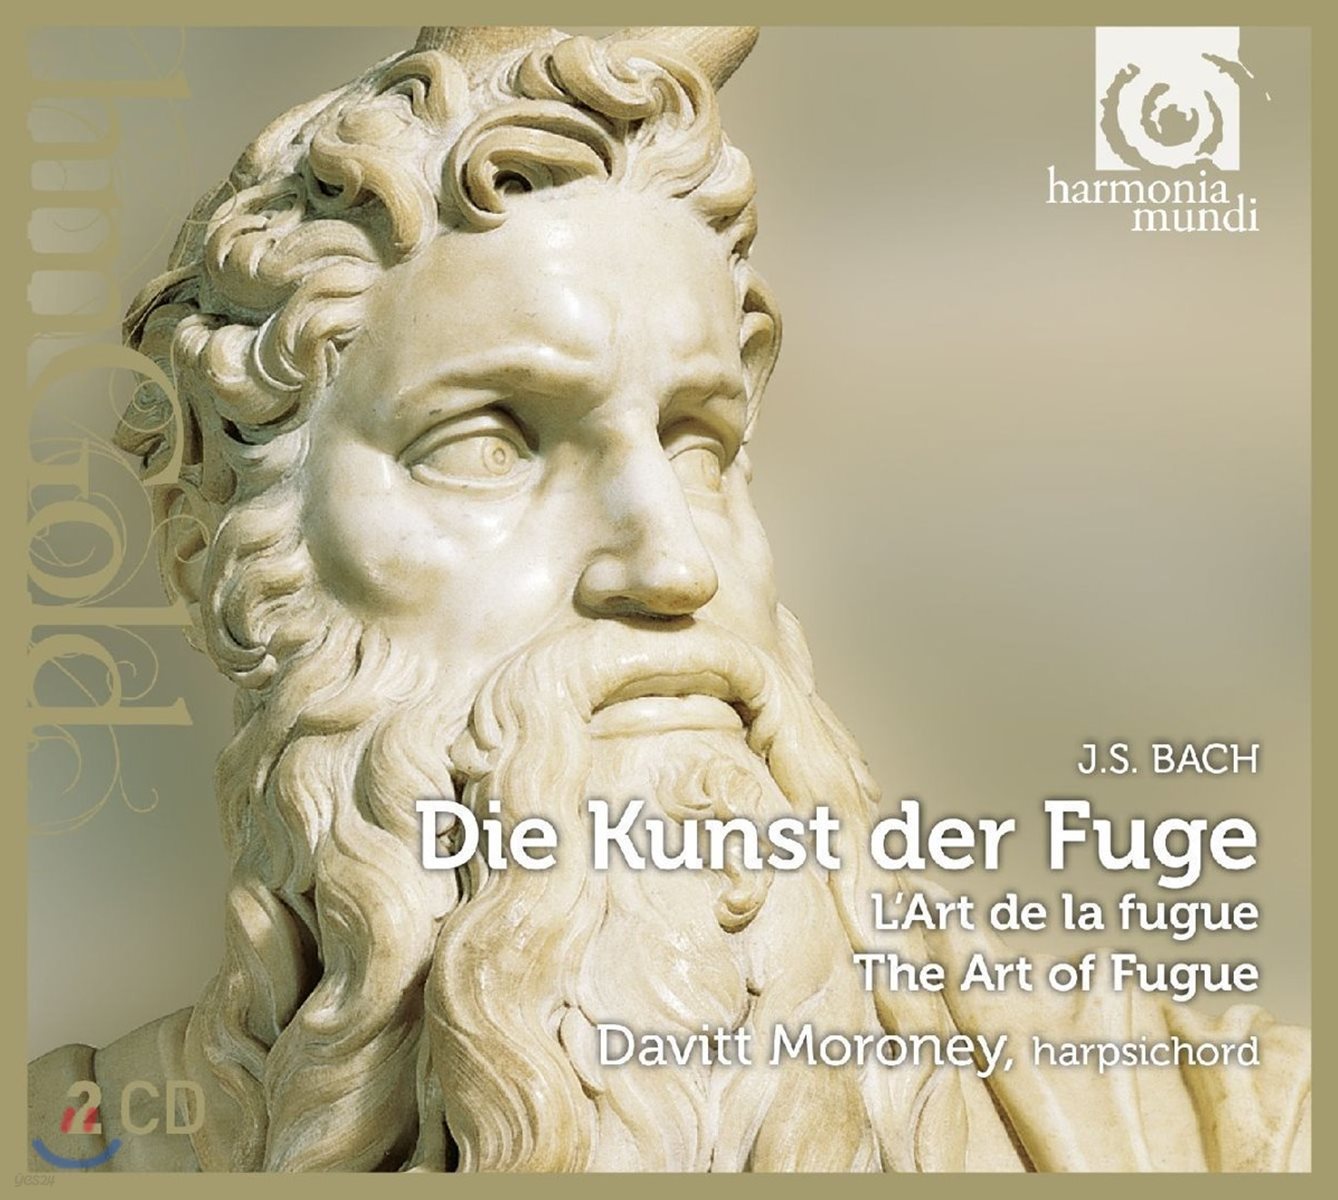 Davitt Moroney 바흐: 푸가의 기법 [하프시코드 연주반] - 데이빗 모로니 (J.S. Bach: The Art of Fugue BWV1080)